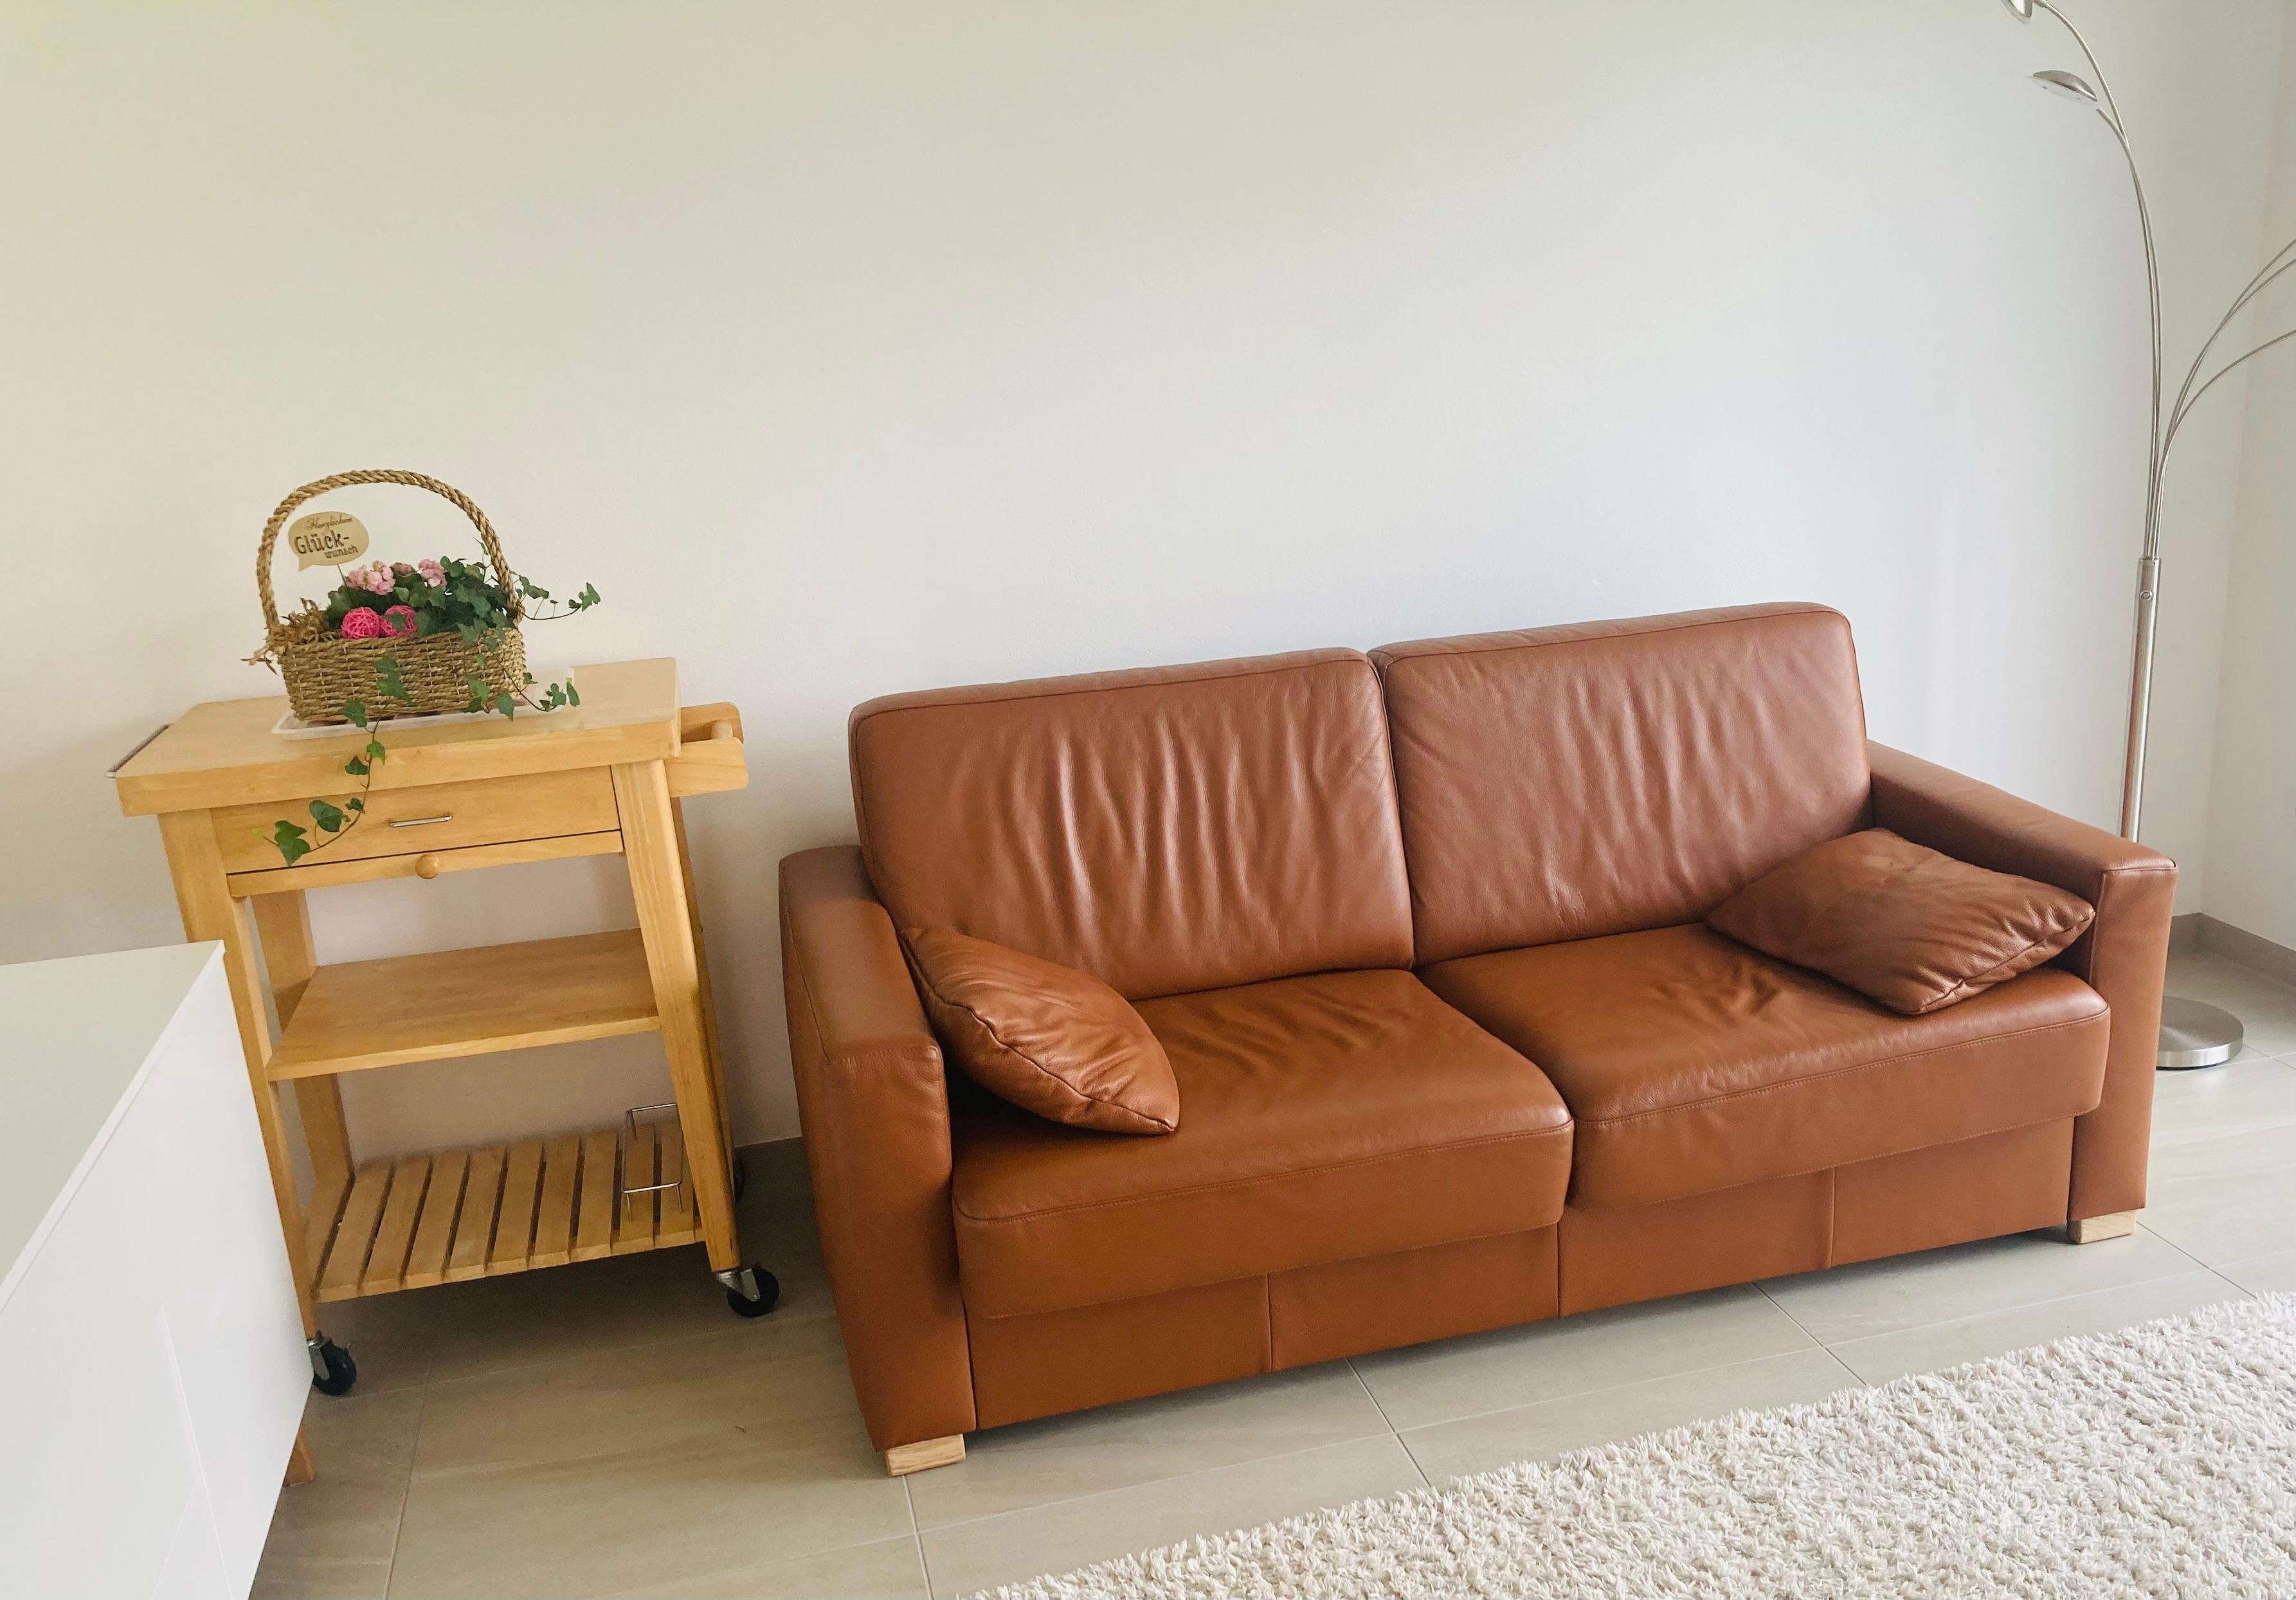 #livingchallenge #wohnzimmer #sofa #ledersofa #holz #teppich #shaggy #stehlampe #minimalistisch #warmefarben